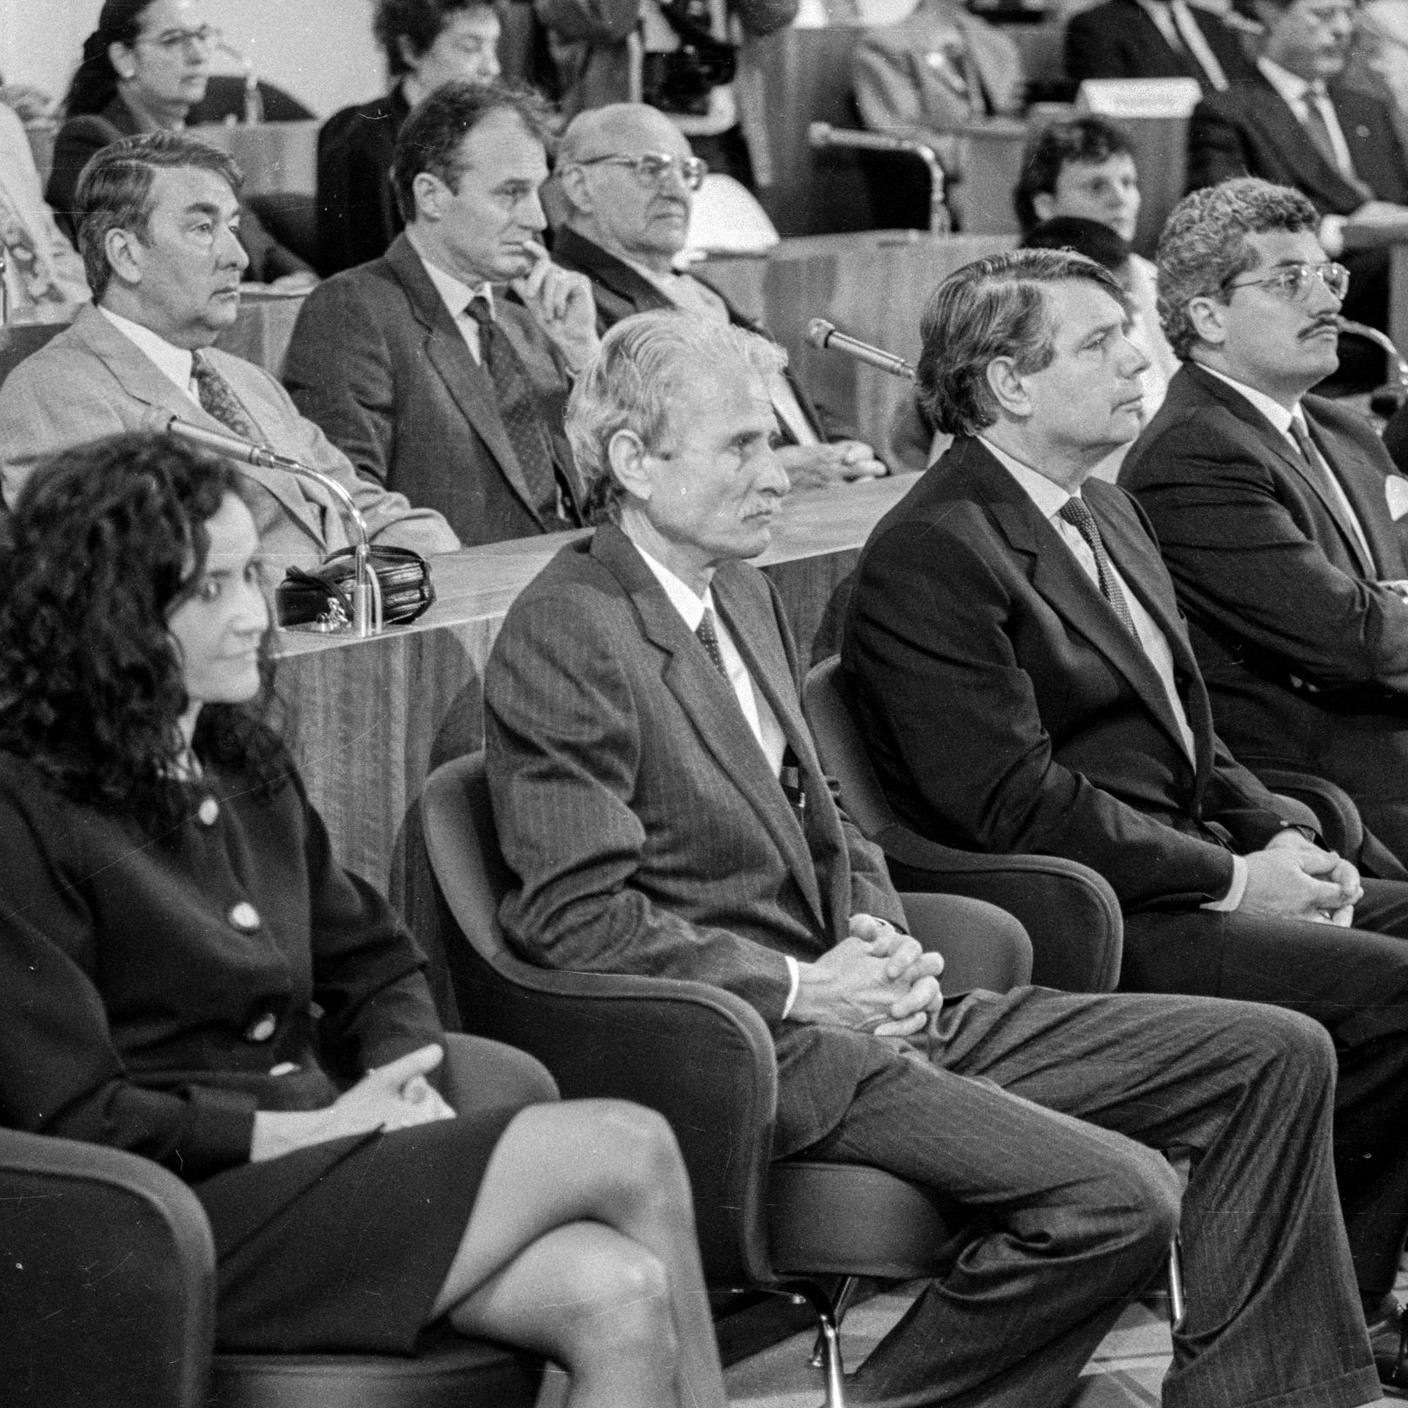 maggio 1995 - Bellinzona, Governo, Insediamento e giuramento nuovo consiglio di stato, da sinistra i Consiglieri di Stato Marina Masoni e Pietro Martinelli, Giuseppe Buffi, Alex Pedrazzini e Marco Borradori